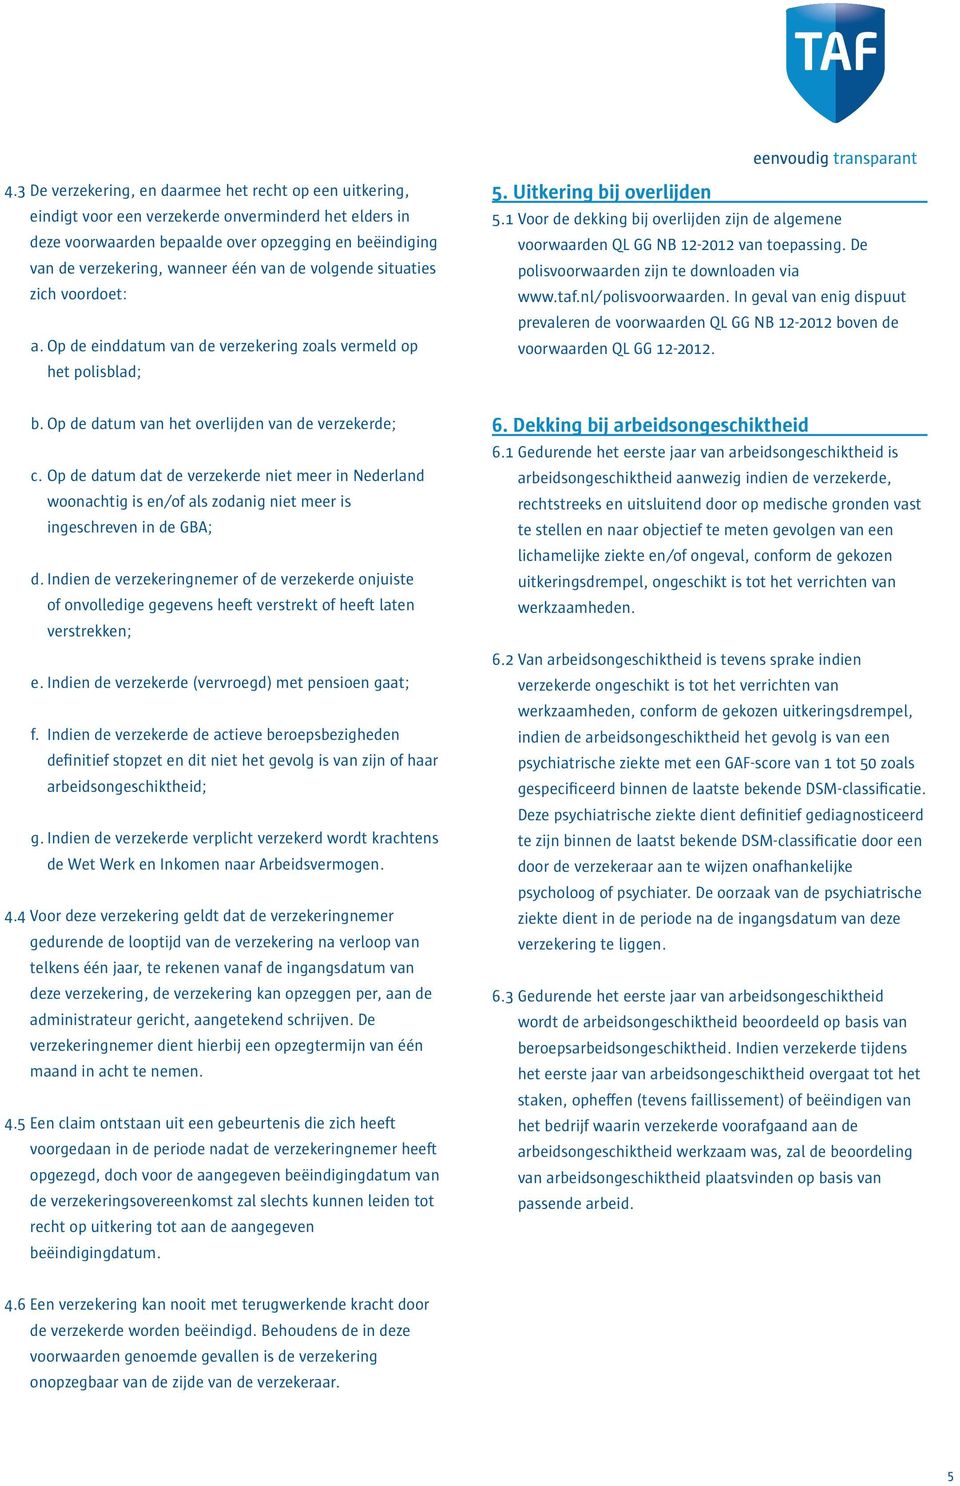 1 Voor de dekking bij overlijden zijn de algemene voorwaarden QL GG NB 12-2012 van toepassing. De polisvoorwaarden zijn te downloaden via www.taf.nl/polisvoorwaarden.